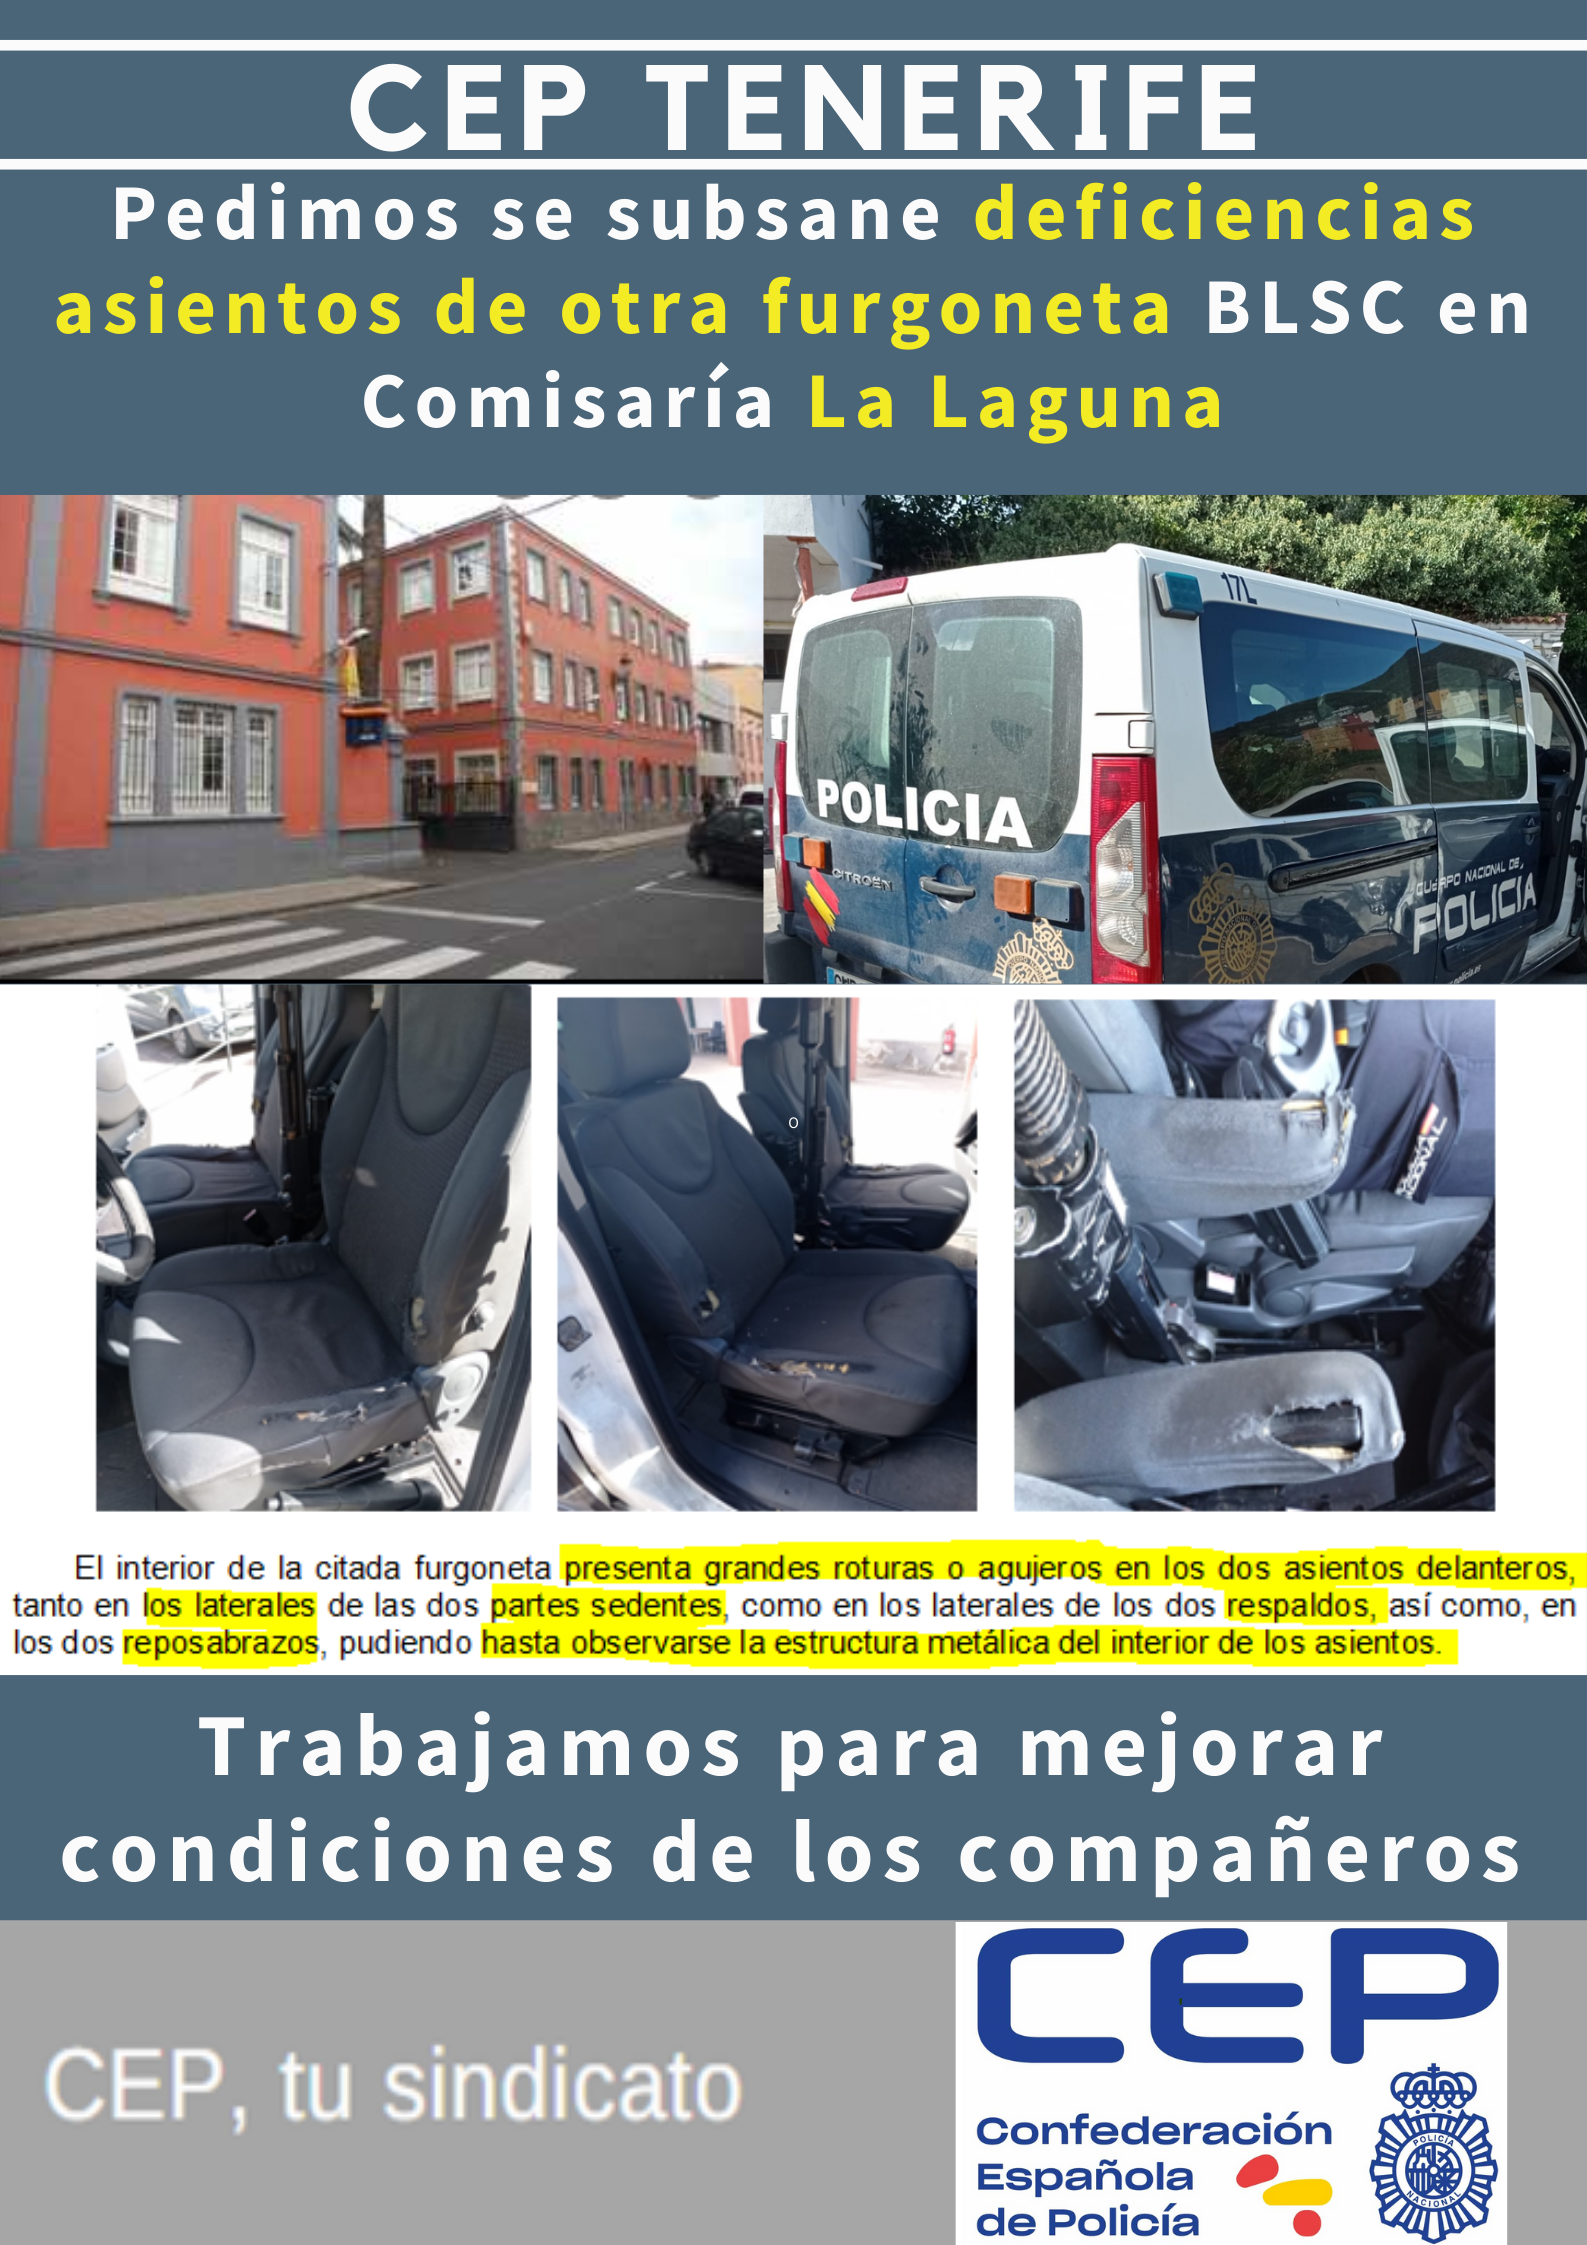 Pedimos subsanar deficiencias de otra furgoneta BLSC comisaría La Laguna